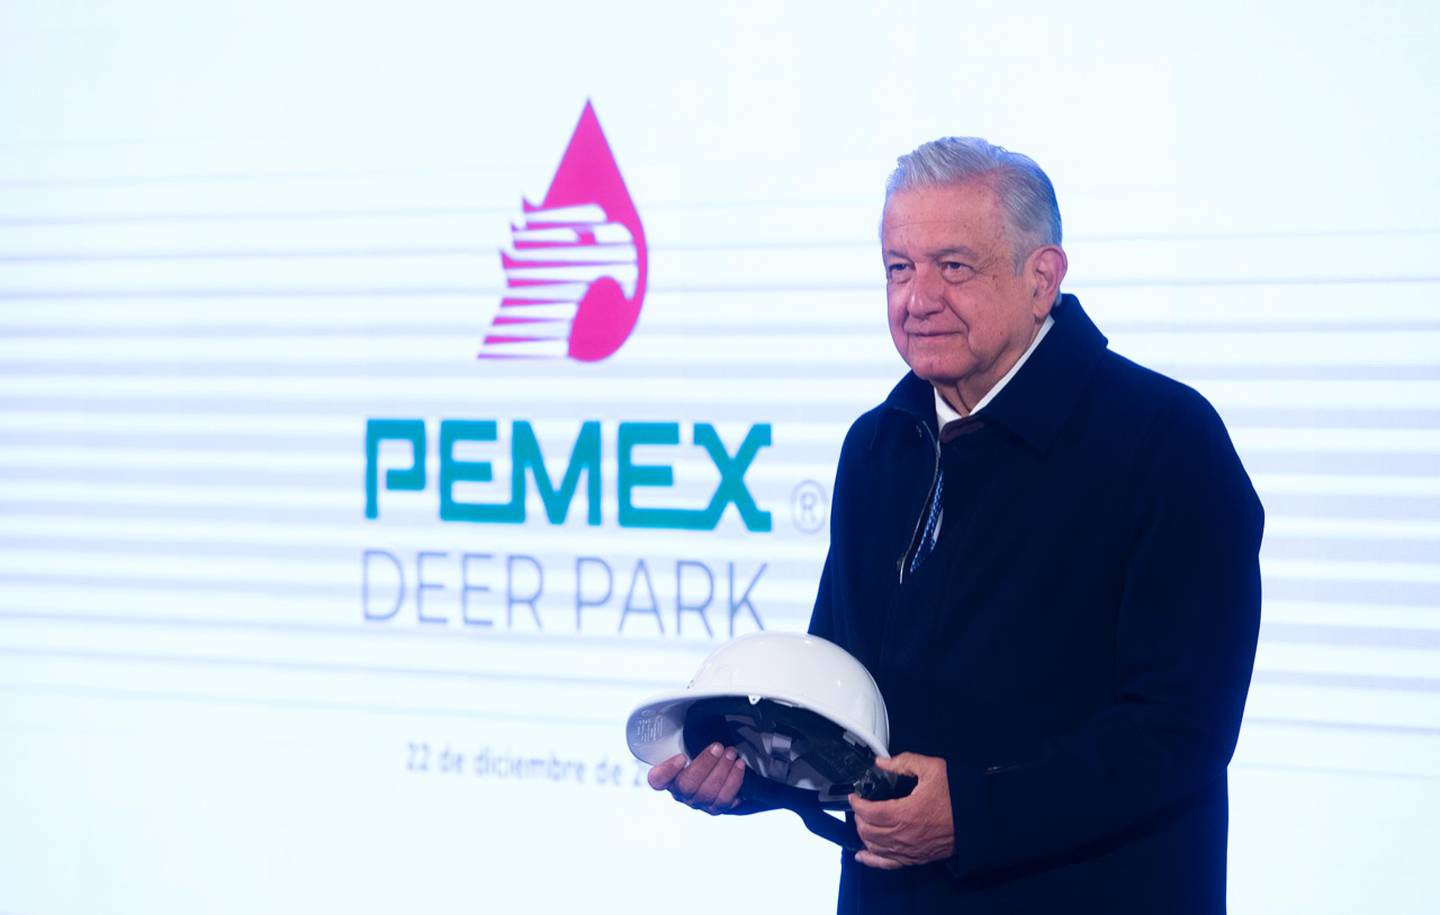 Andrés Manuel López Obrador, presidente de México, sostiene un casco de Petróleos Mexicanos (Pemex) con el nombre de la refinería Deer Park, tras anunciar que el gobierno de EE.UU. autorizó la compra total del complejo refinador.